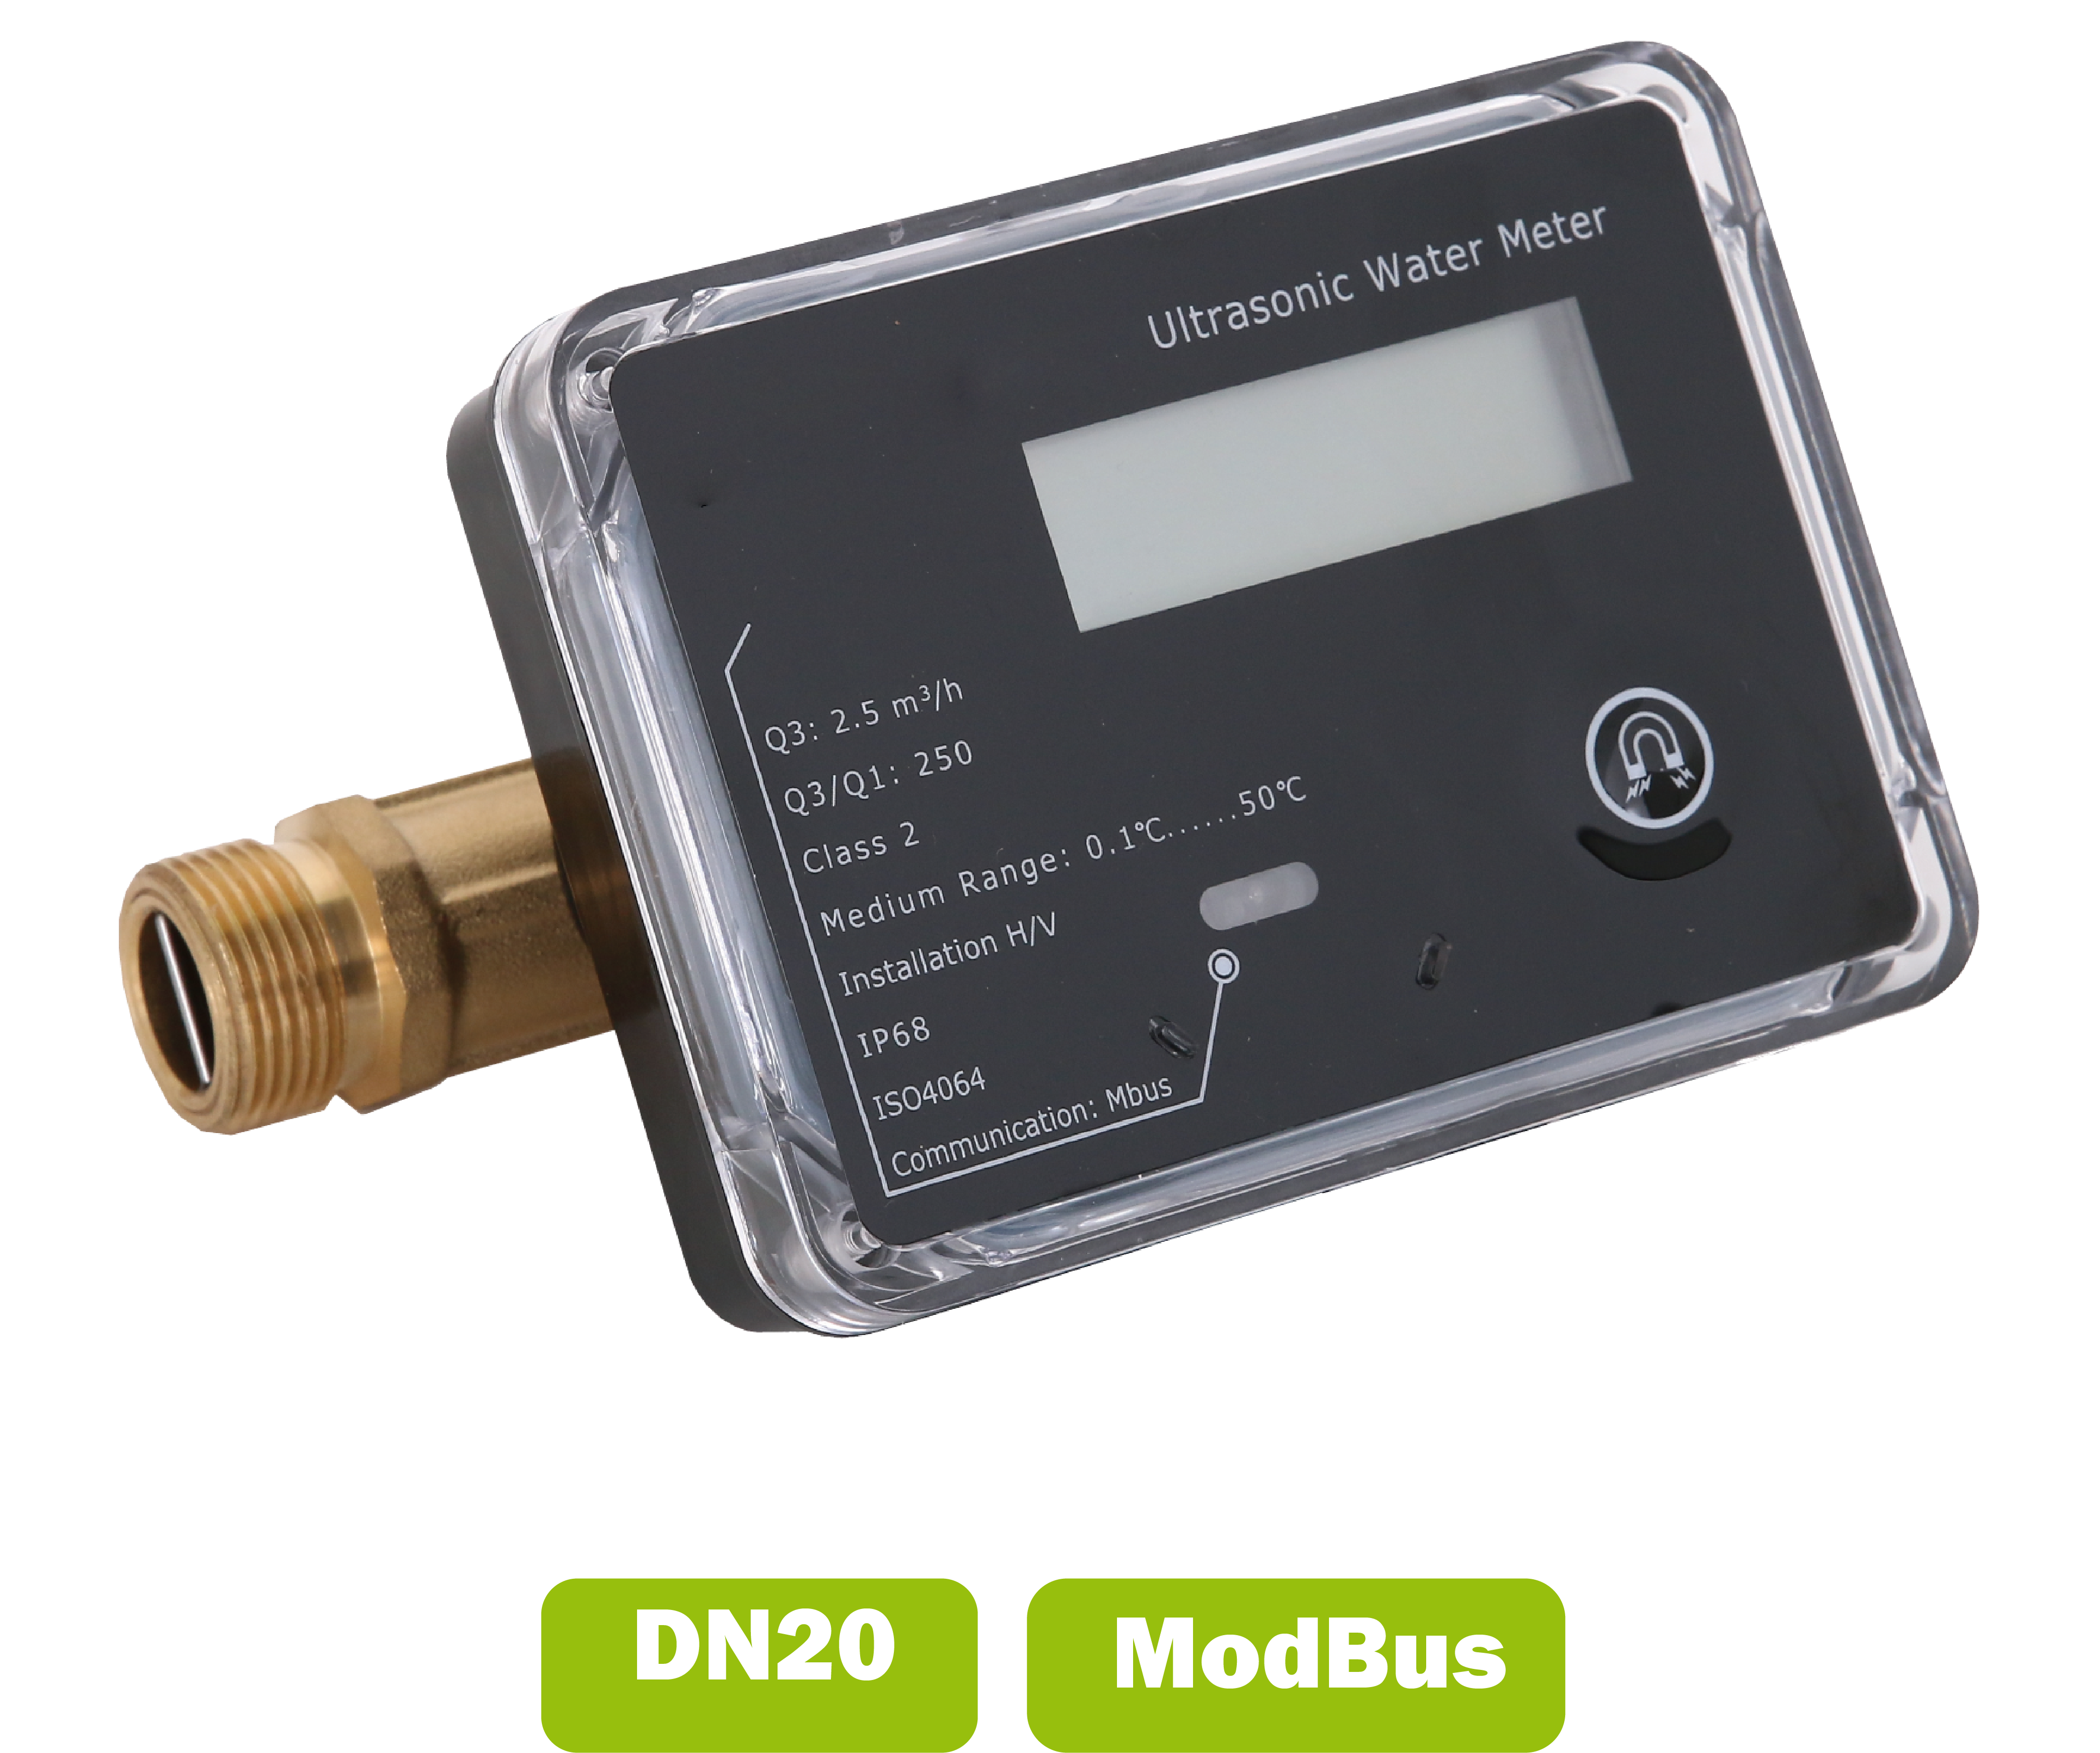 Water meter (calda fredda) a ultrasuoni DN20 portata media 2.5 m3/h con interfaccia Modbus